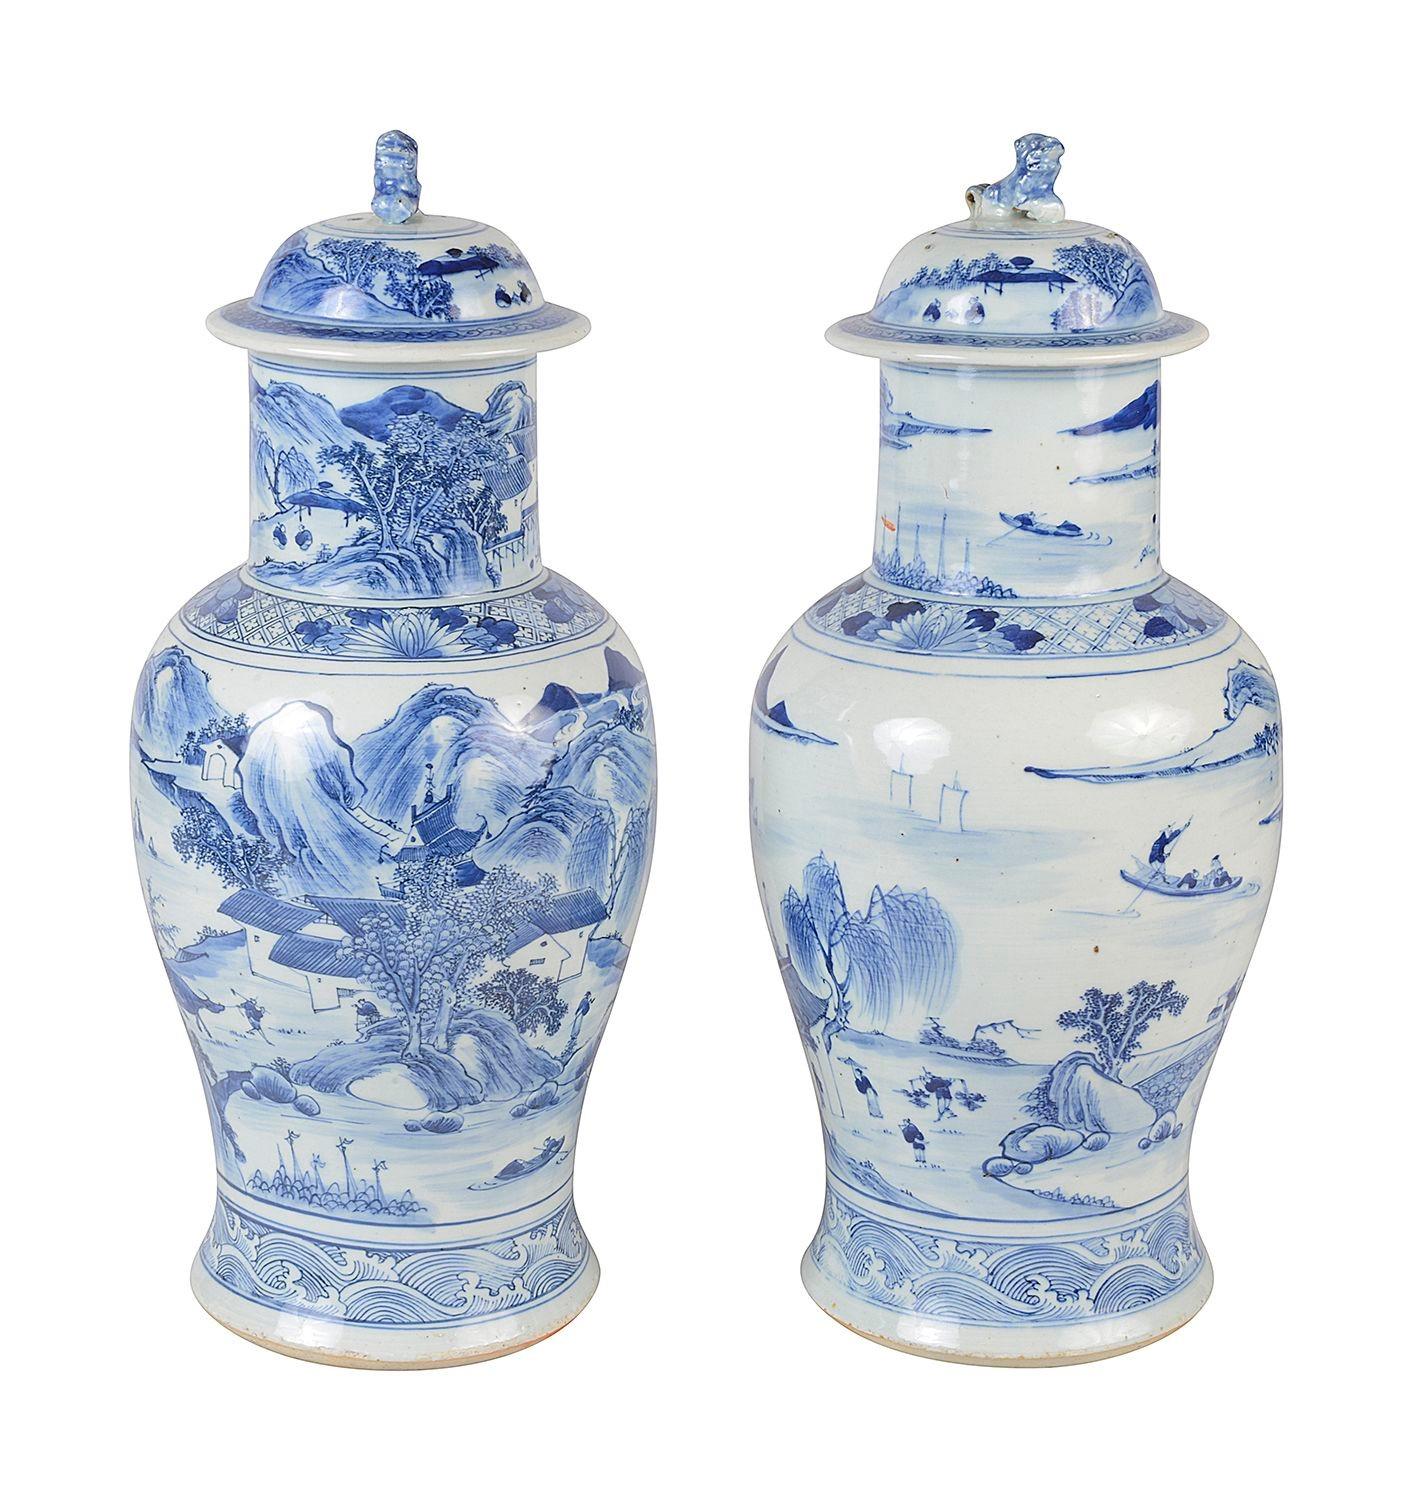 Paire de vases à couvercle bleu et blanc de bonne qualité datant de la fin du XIXe siècle. Les couvercles sont ornés d'embouts en forme de chien de Foo et de magnifiques scènes peintes à la main représentant des montagnes, des lacs et des pagodes,